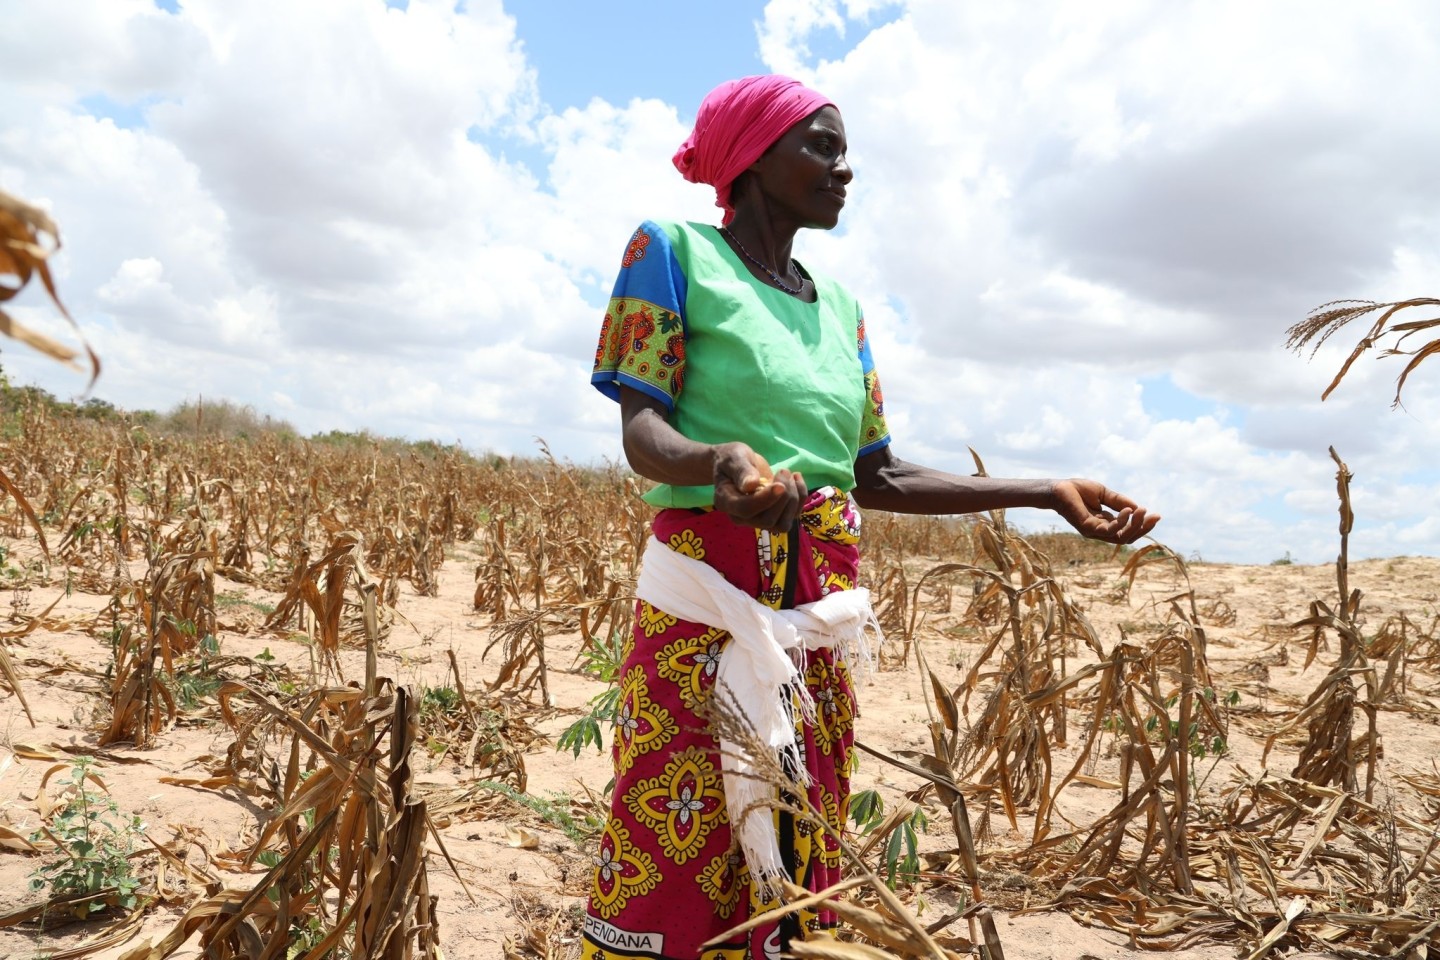 Kenia kämpft mit der dritten Dürre innerhalb eines Jahrzehnts - der Krieg in der Ukraine verschlimmert die ohnehin katastrophale Situation.